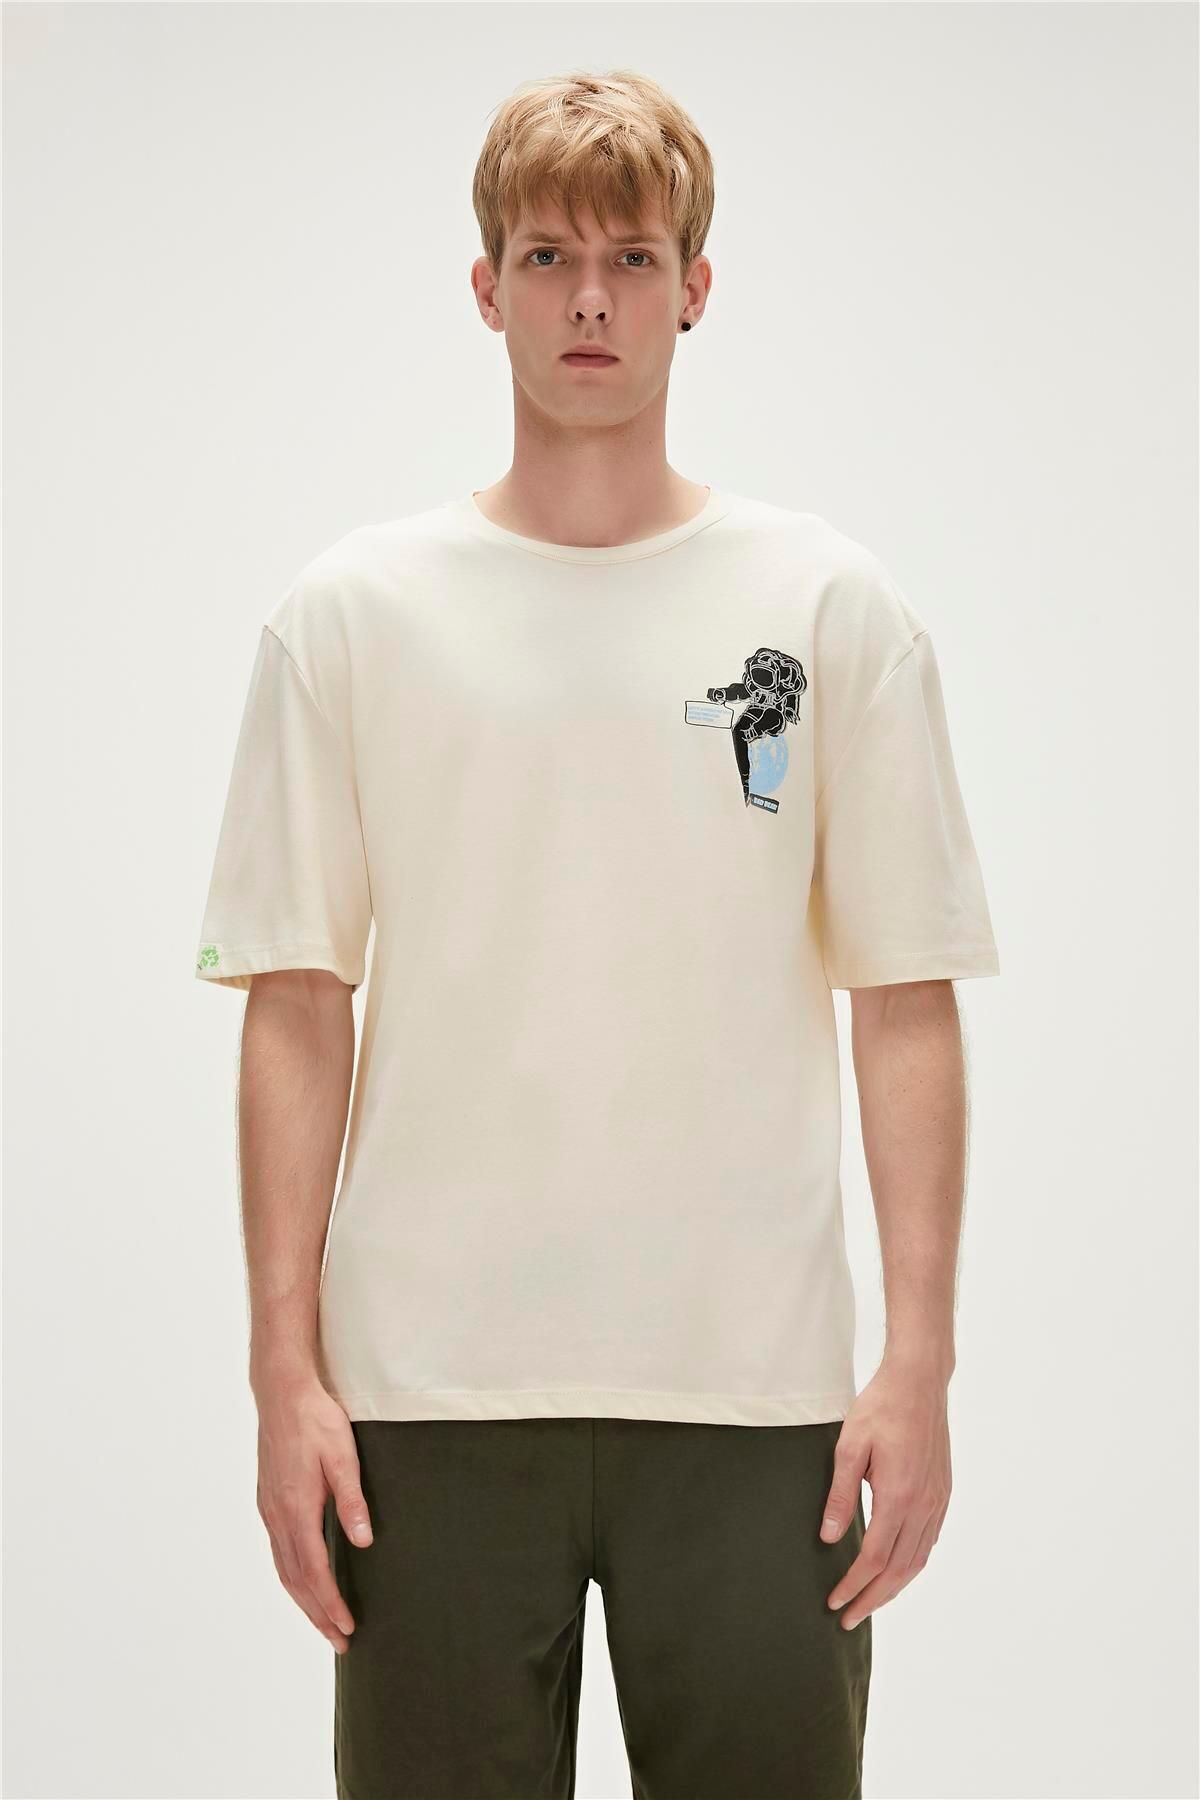 Bad Bear Re-life Recycle Marshmallow Beyaz T-shirt Baskılı Erkek Tişört